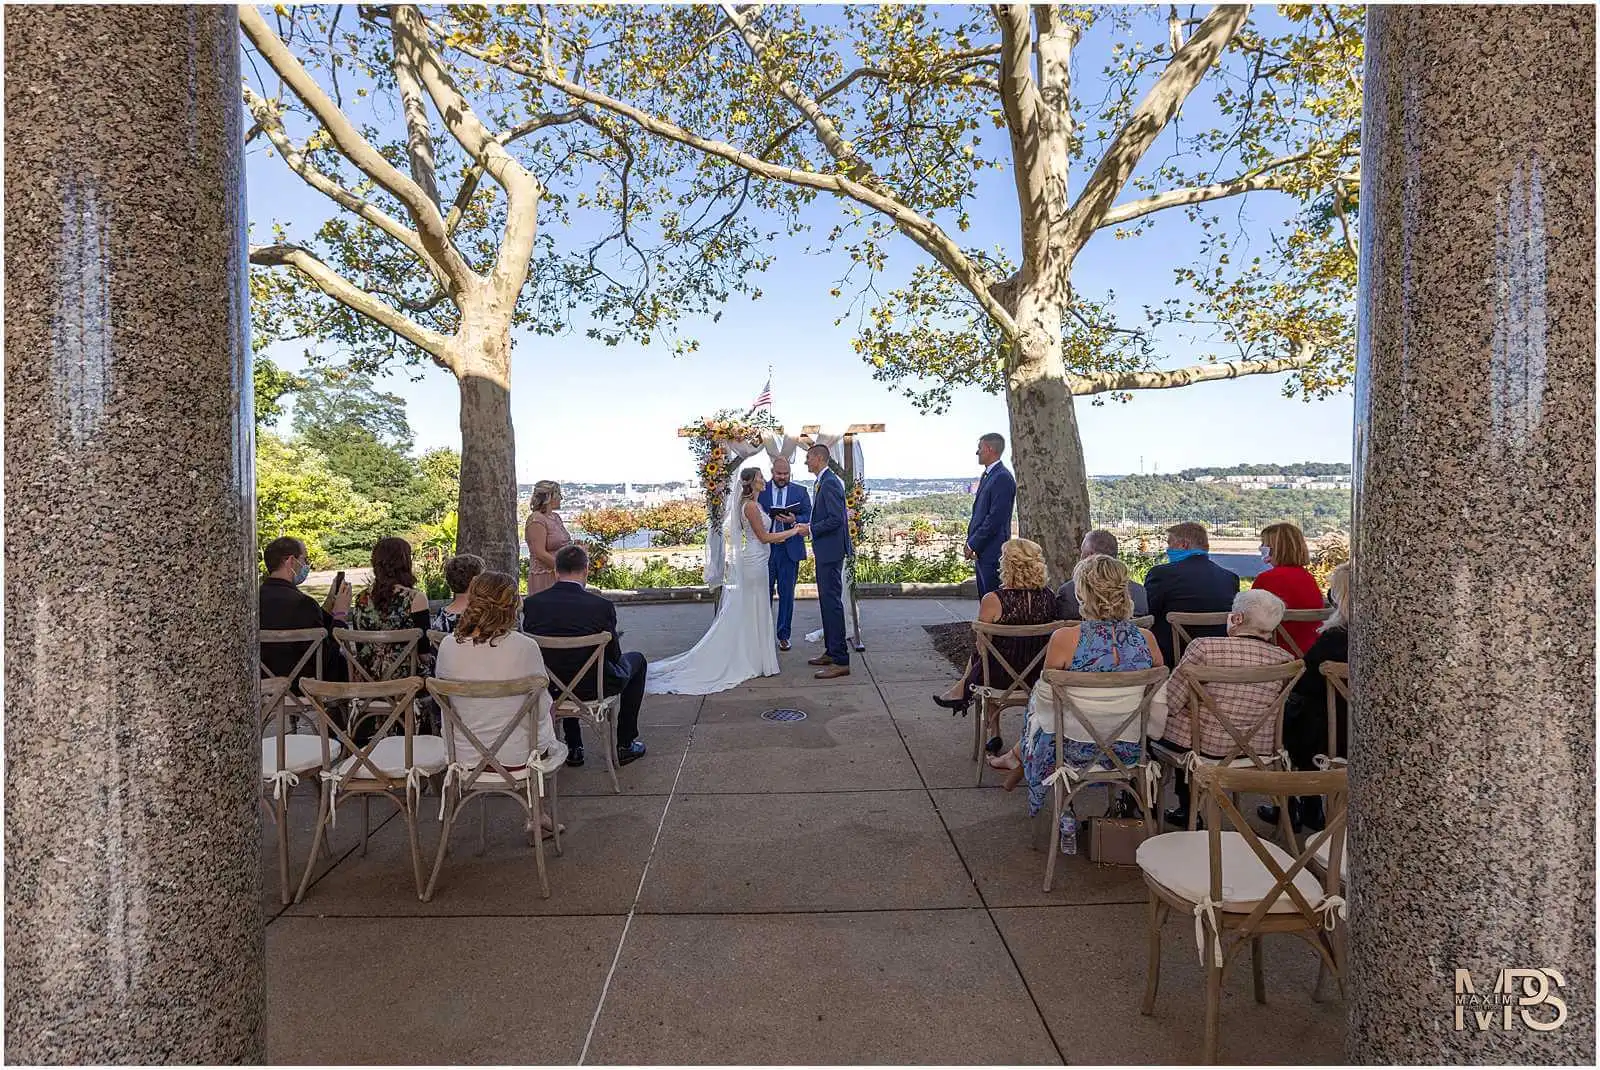 Cincinnati Micro wedding elopement Mt. Echo Park Elopement Ceremony